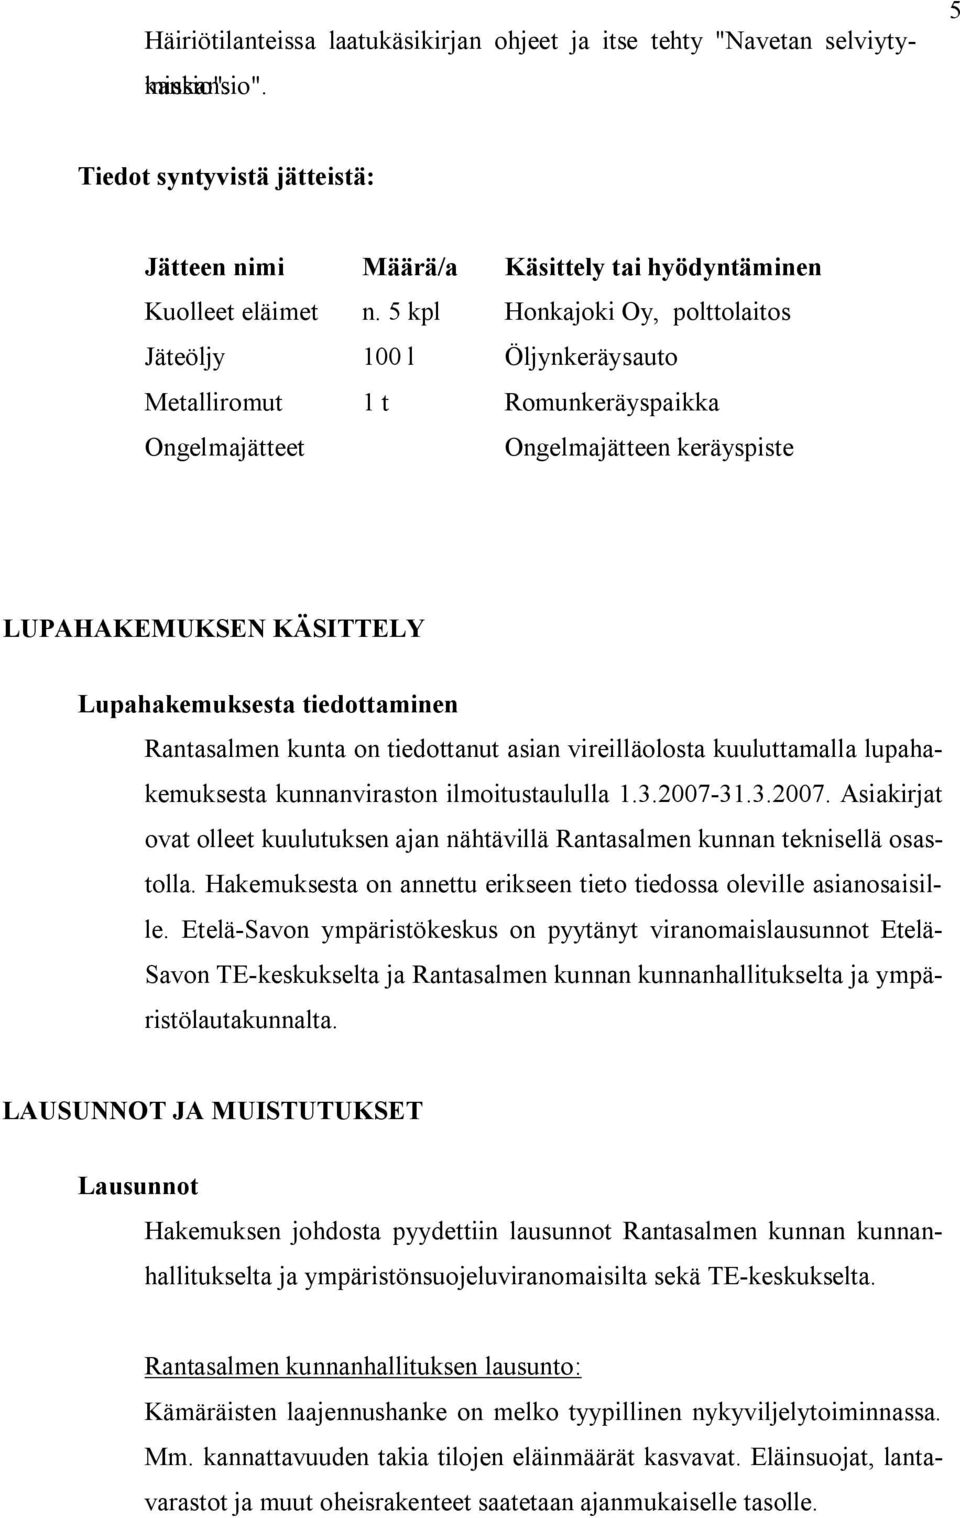 Rantasalmen kunta on tiedottanut asian vireilläolosta kuuluttamalla lupahakemuksesta kunnanviraston ilmoitustaululla 1.3.2007 